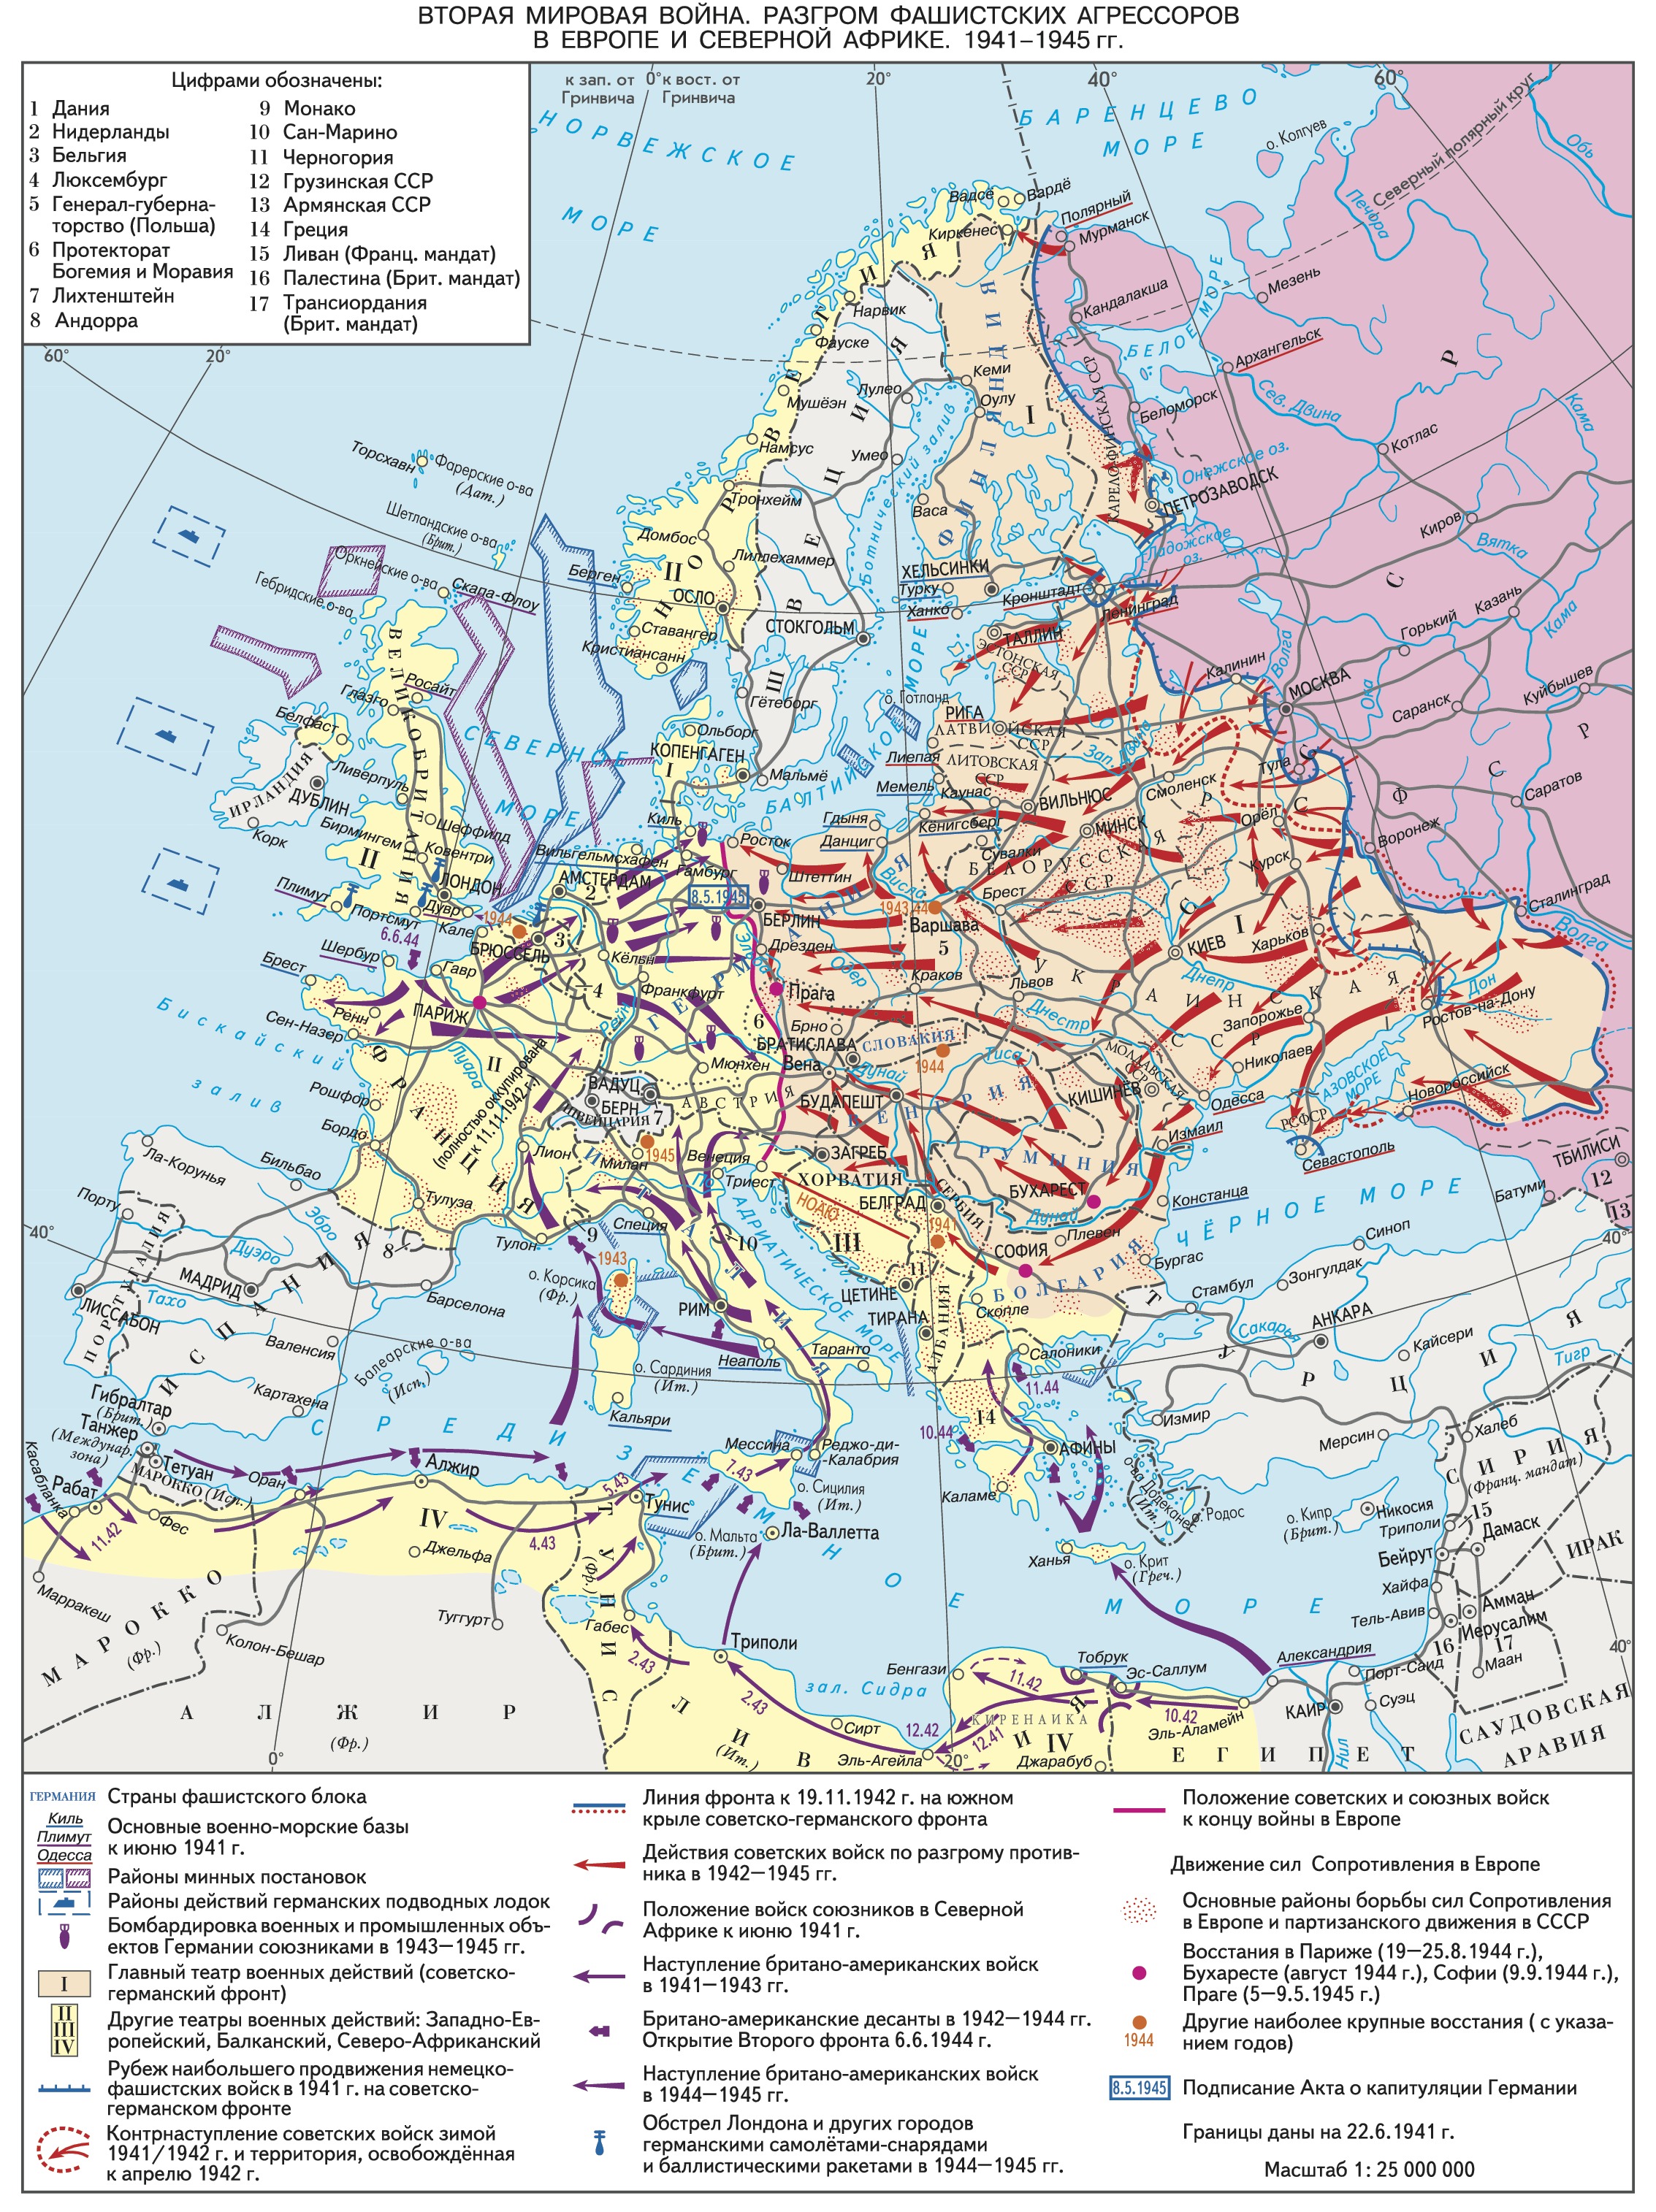 Планы второй мировой войны в европе. Карта второй мировой войны наступление советских войск. Карта второй мировой войны 1939-1945 территории.